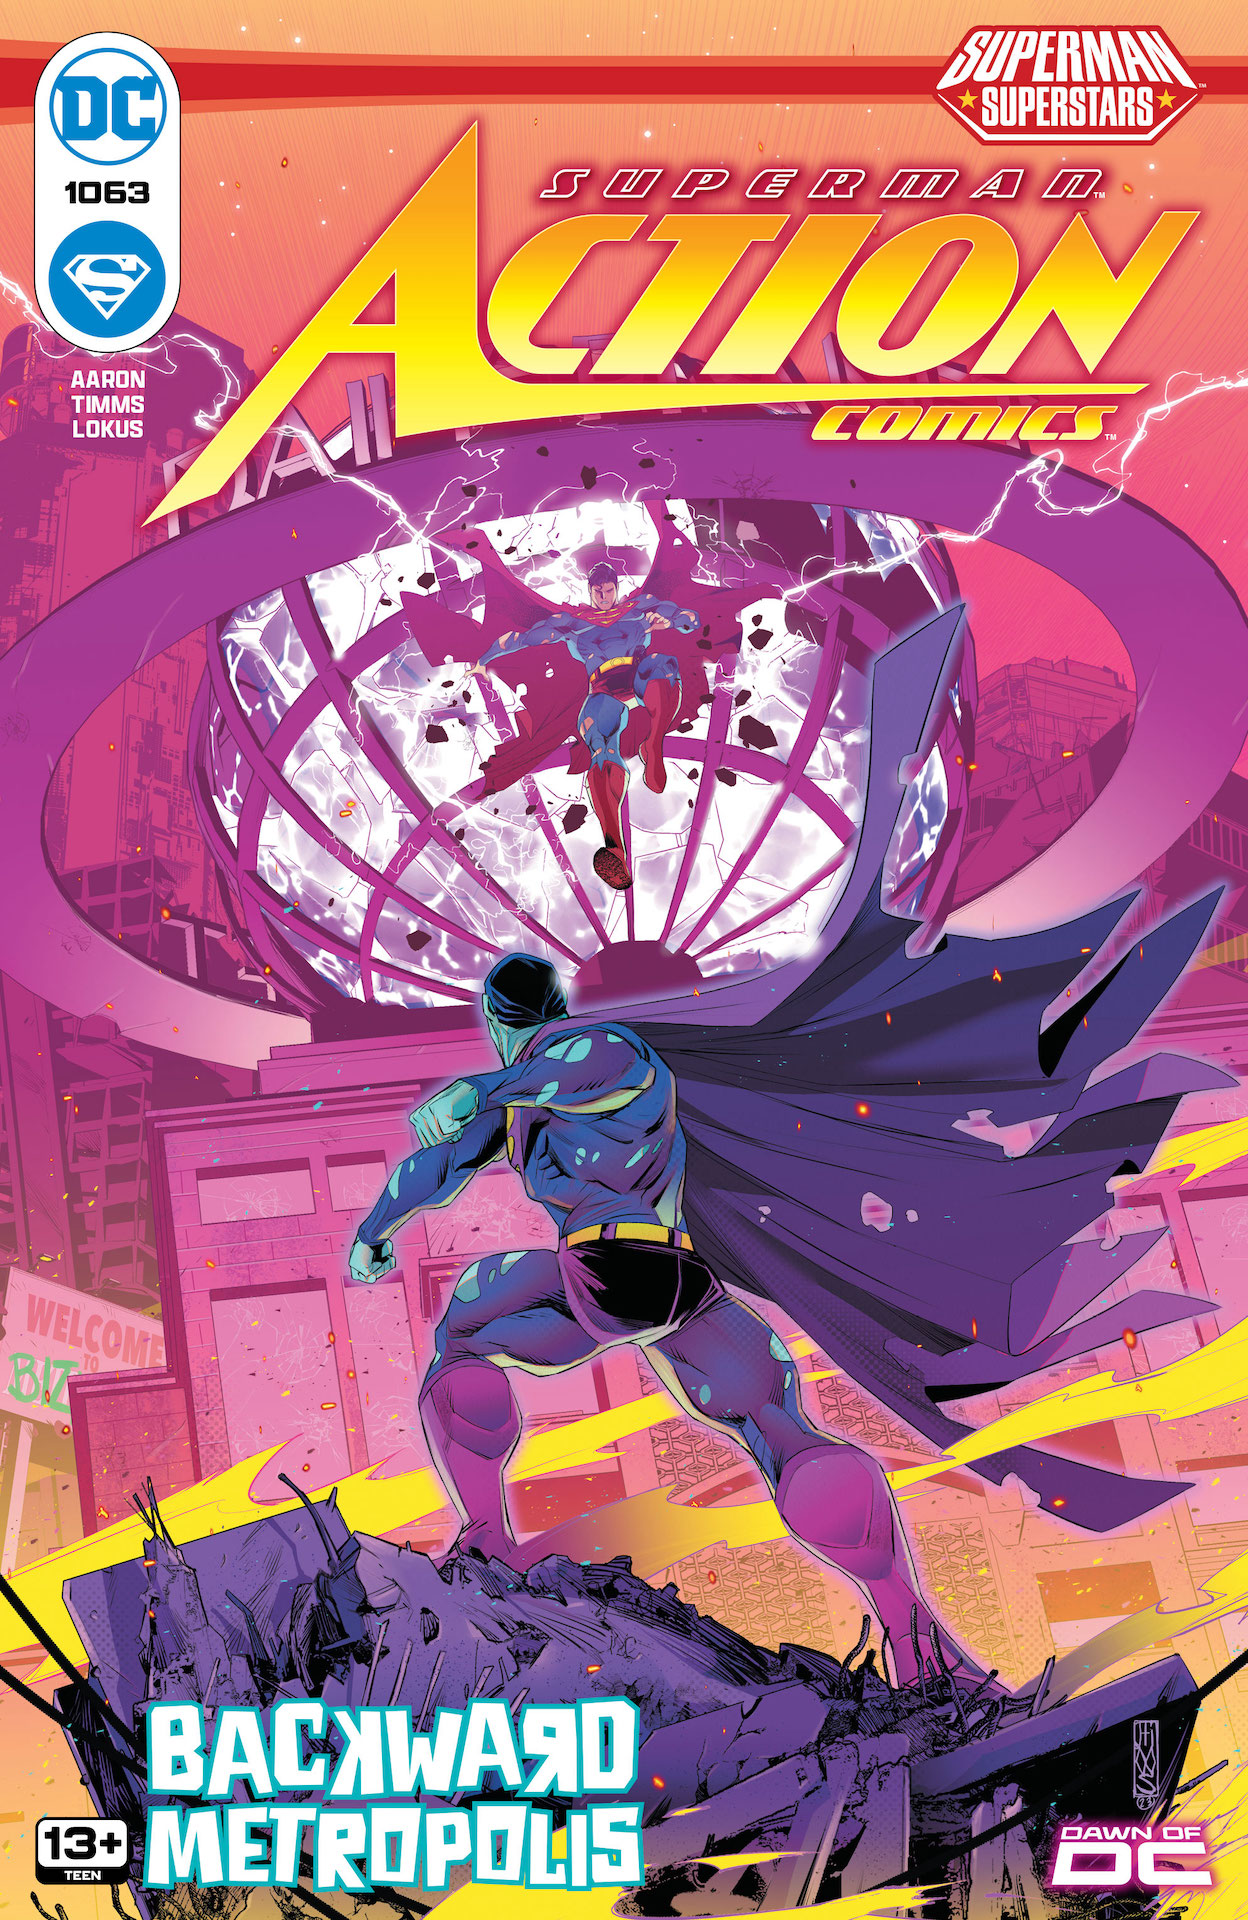 DC Preview: Action Comics #1063